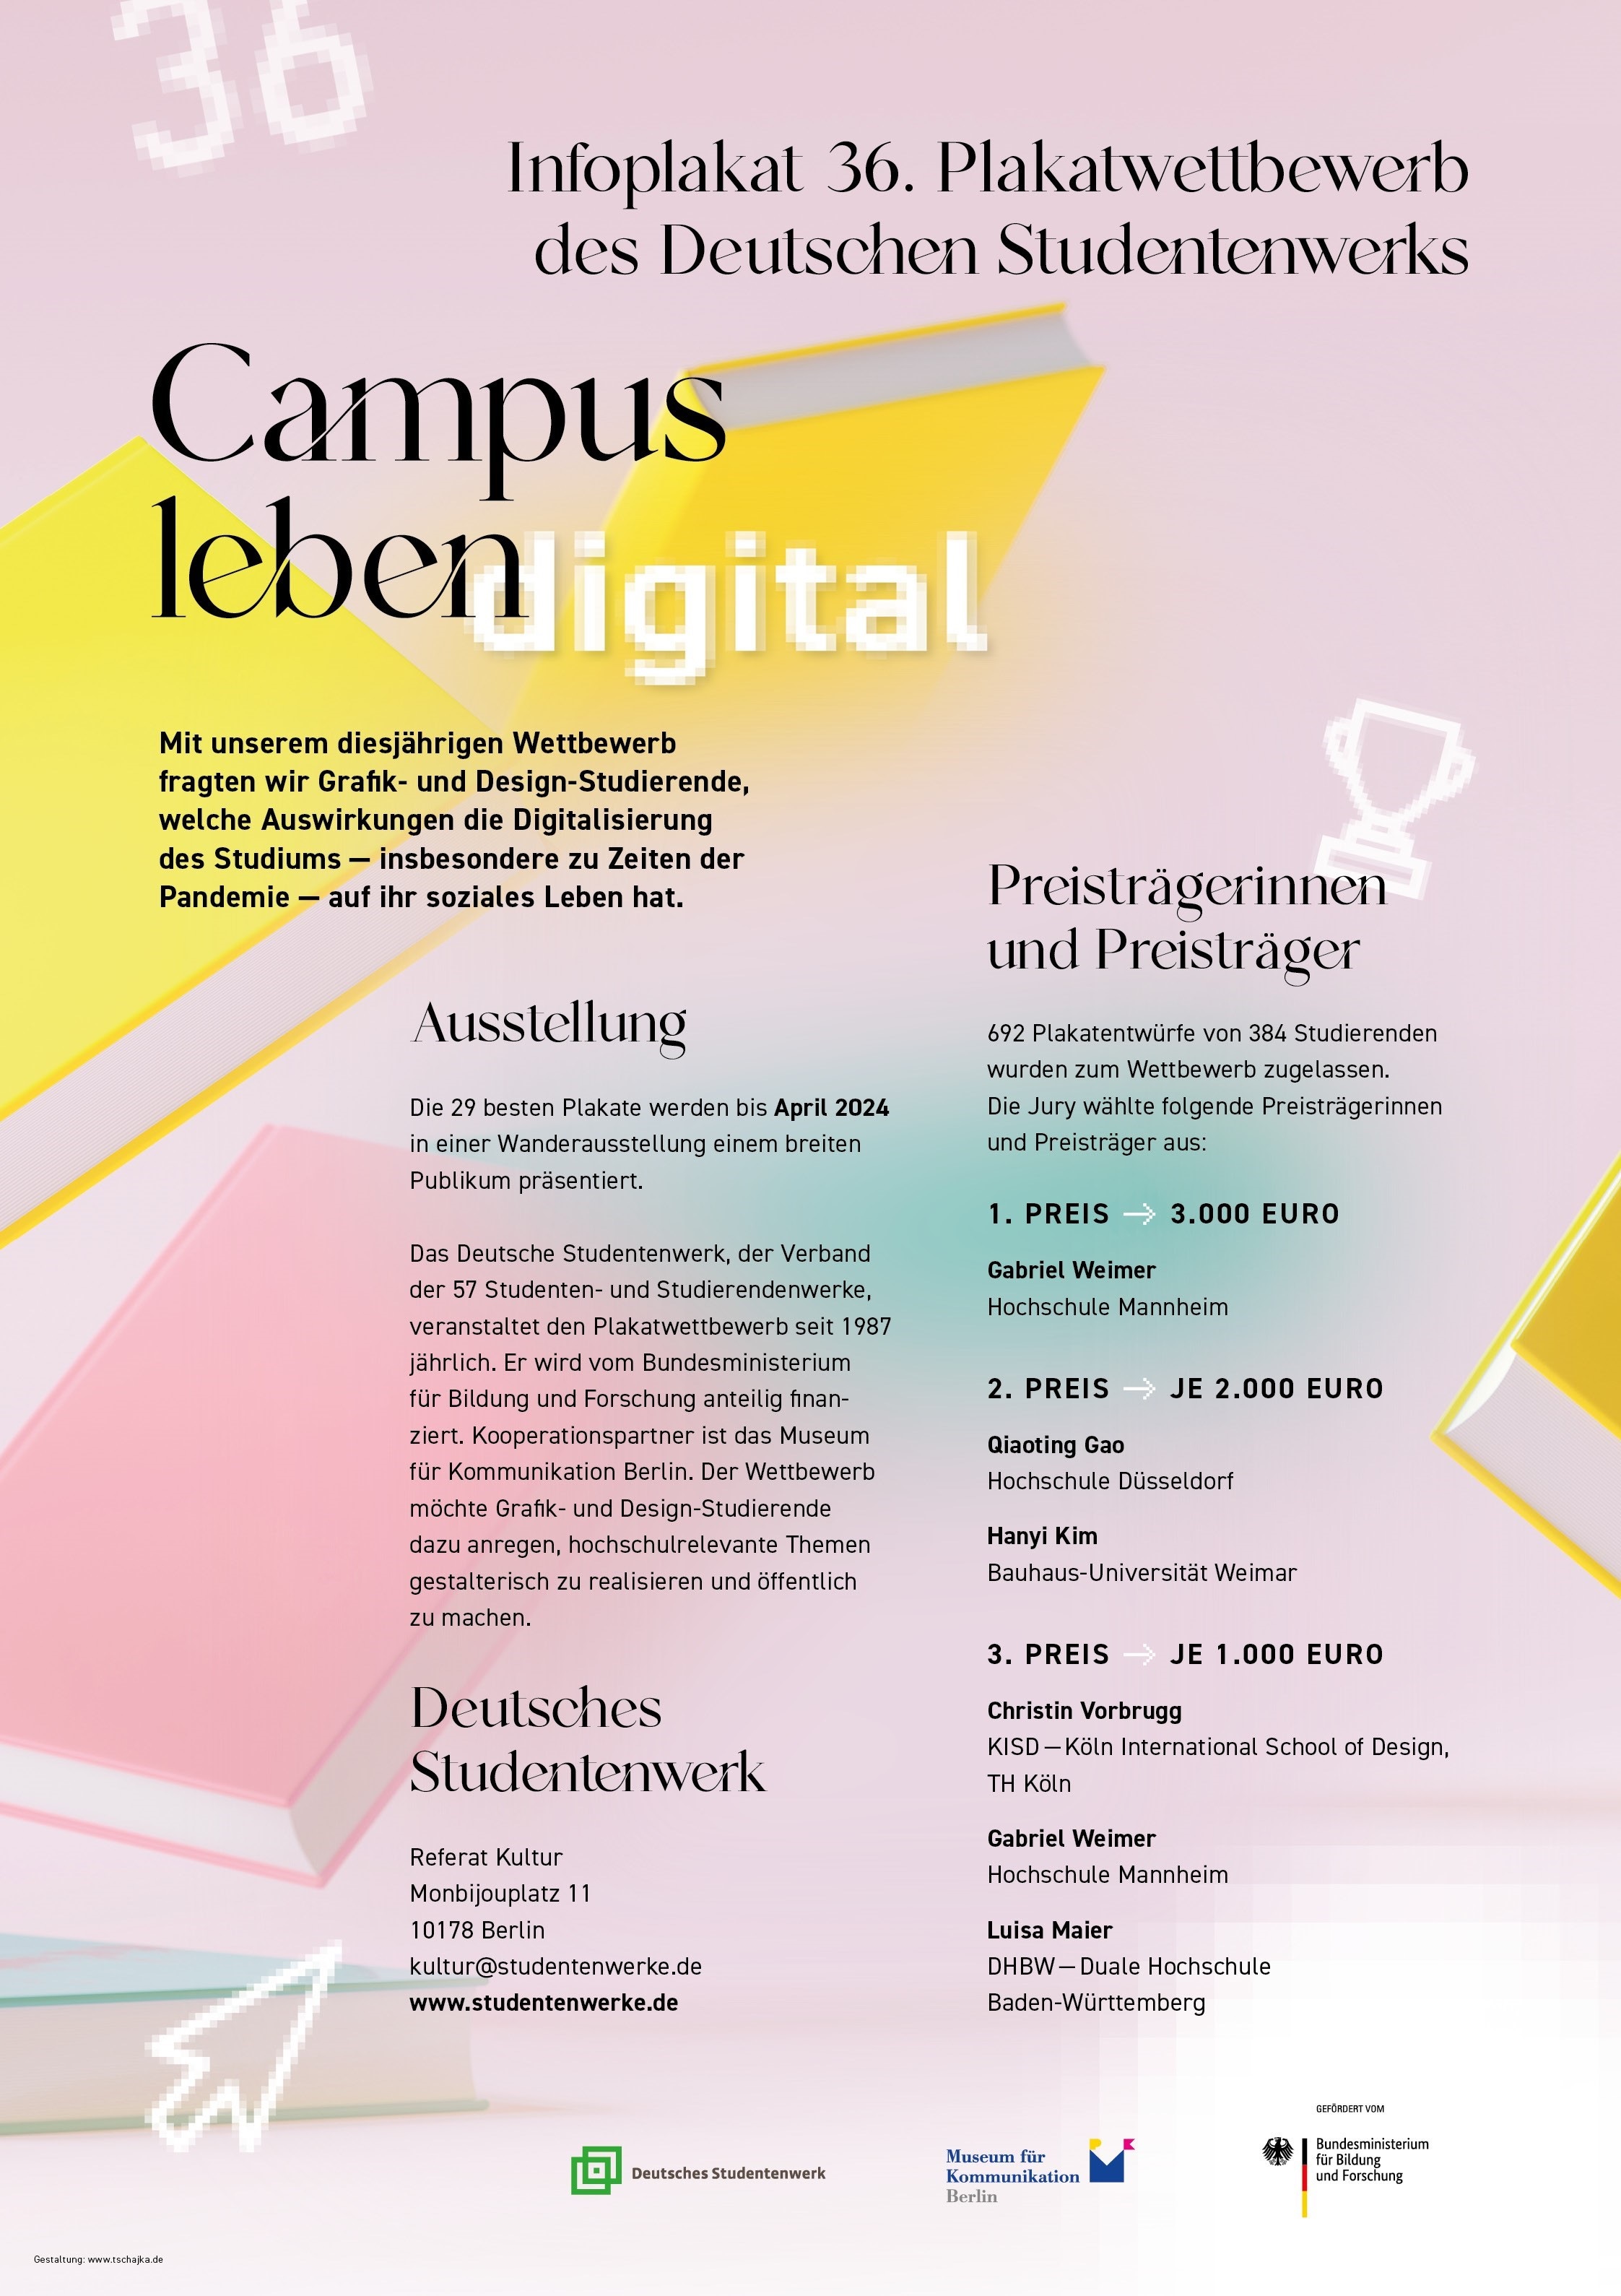 36. Plakatwettbewerb des Deutschen Studentenwerks - "Campusleben digital" 2021/2022 - Infoplakat mit PreisträgerInnen